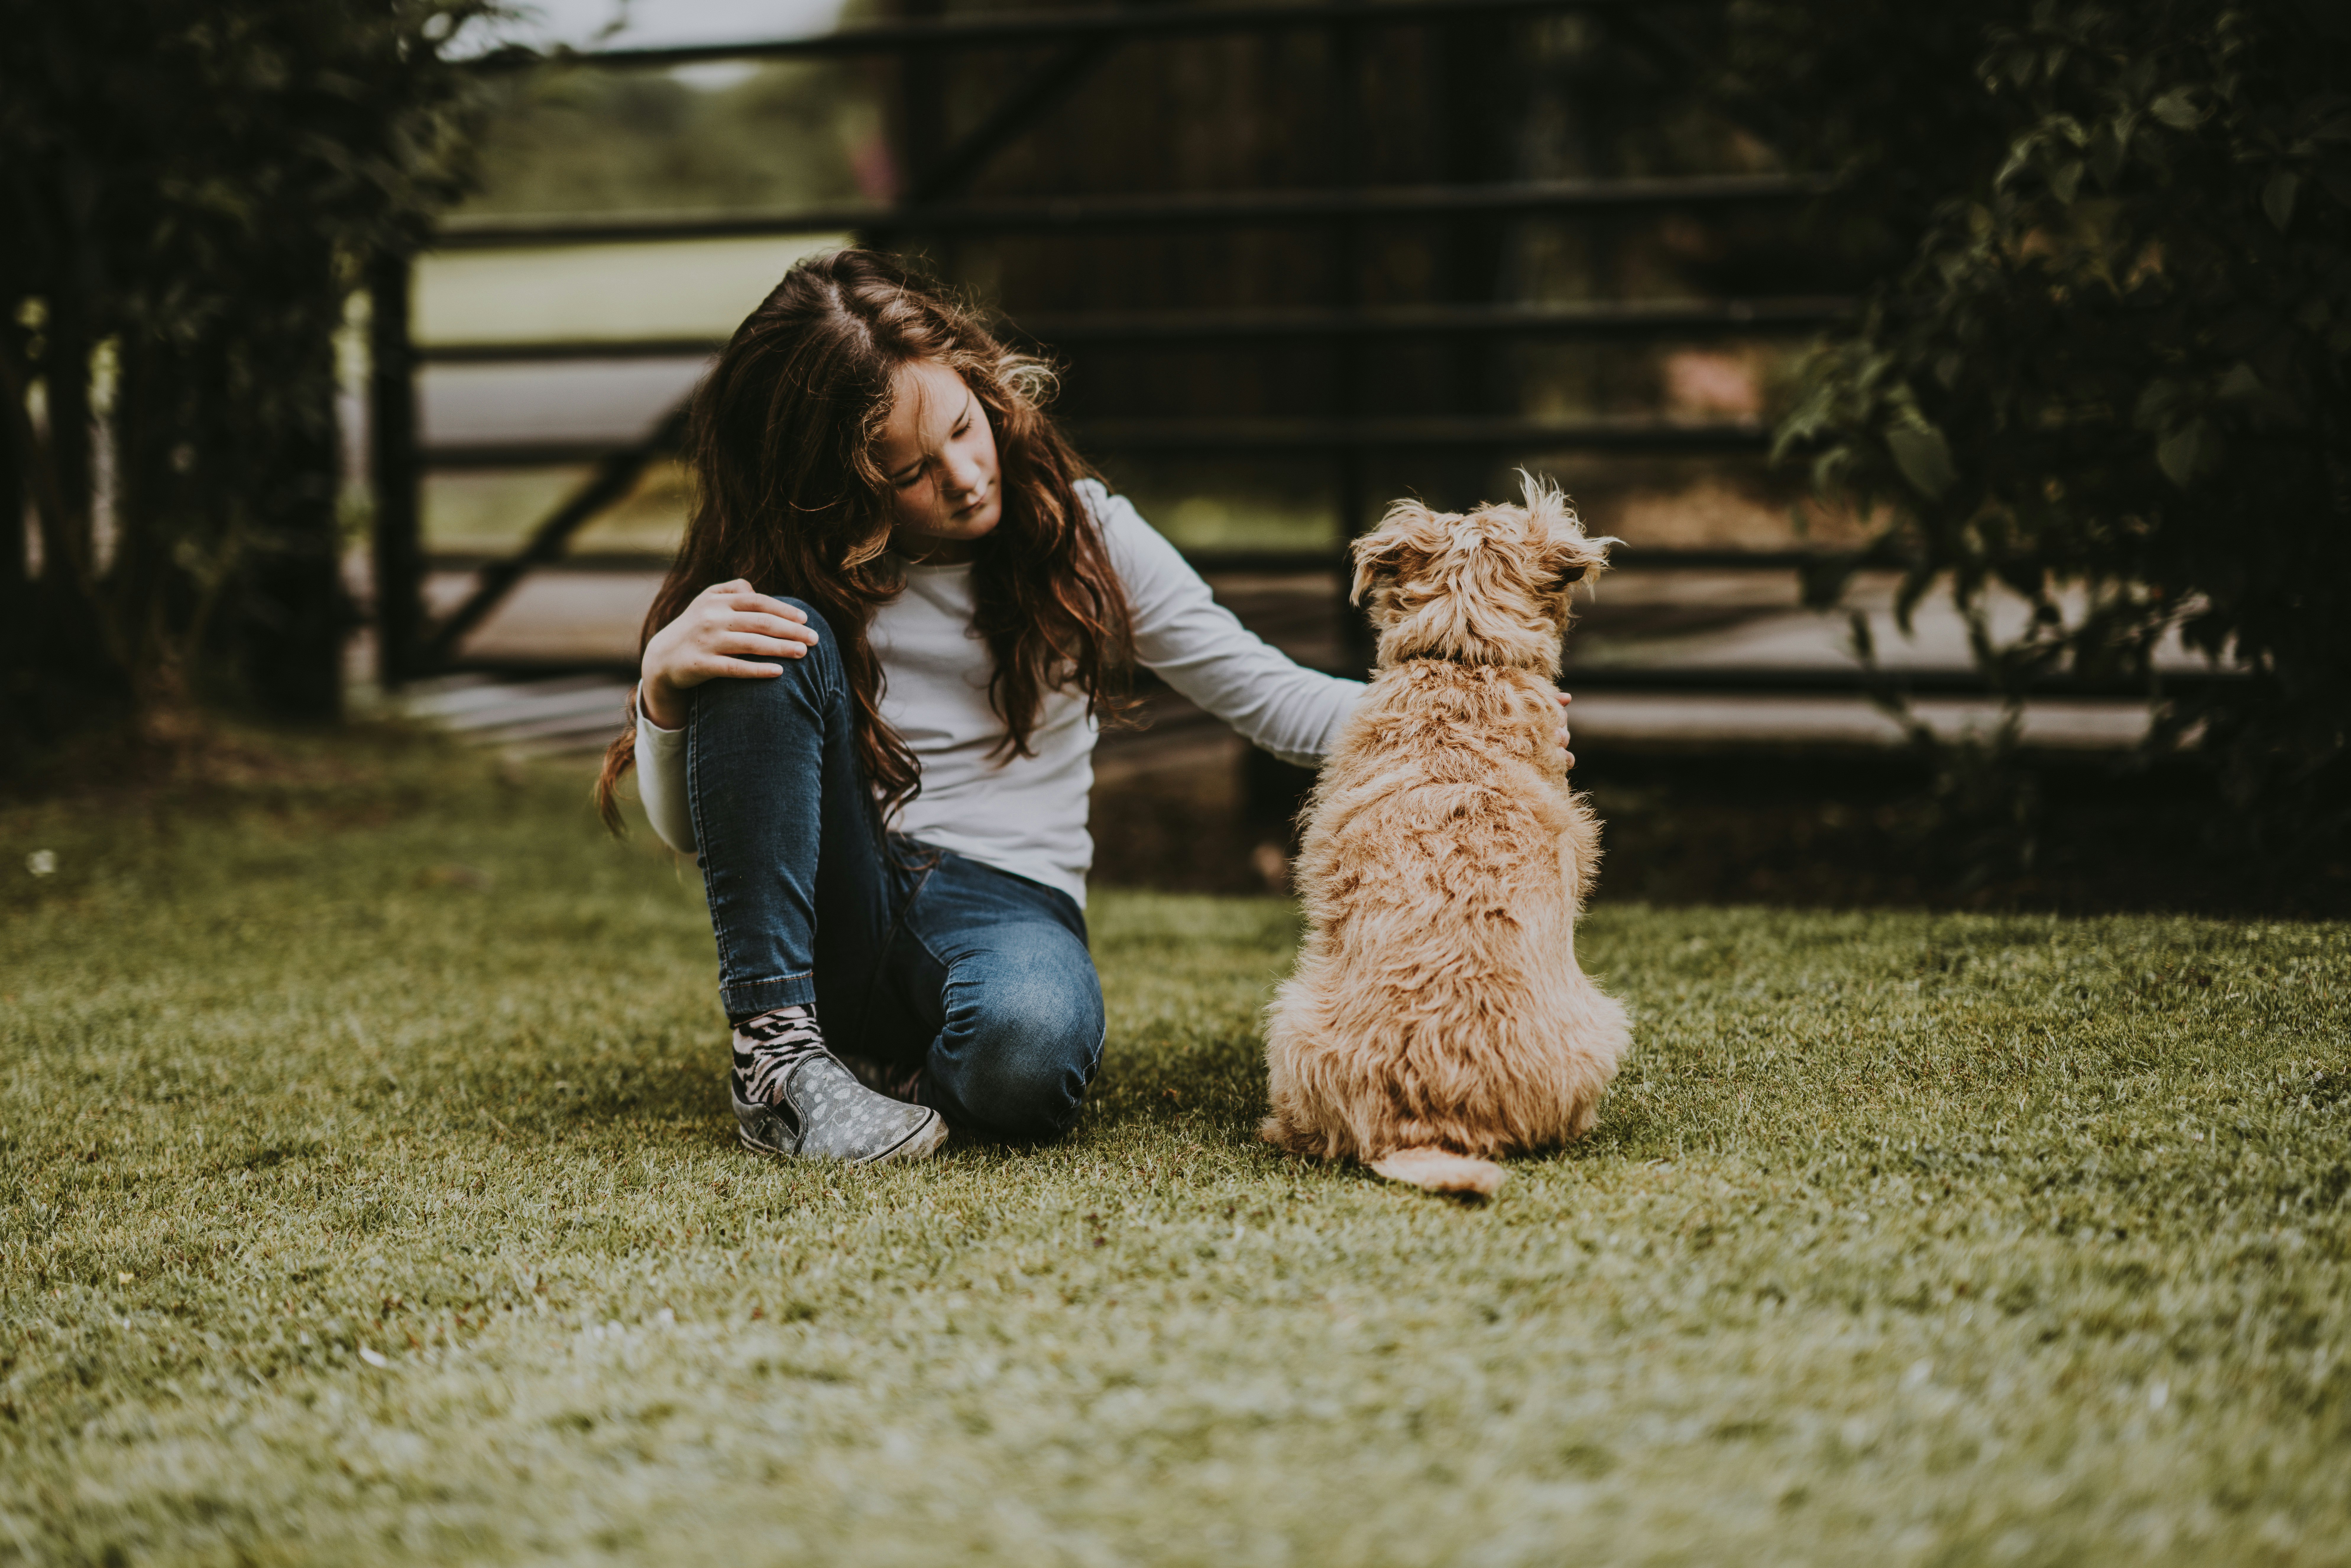 A woman petting a tan, fluffy medium sized dog